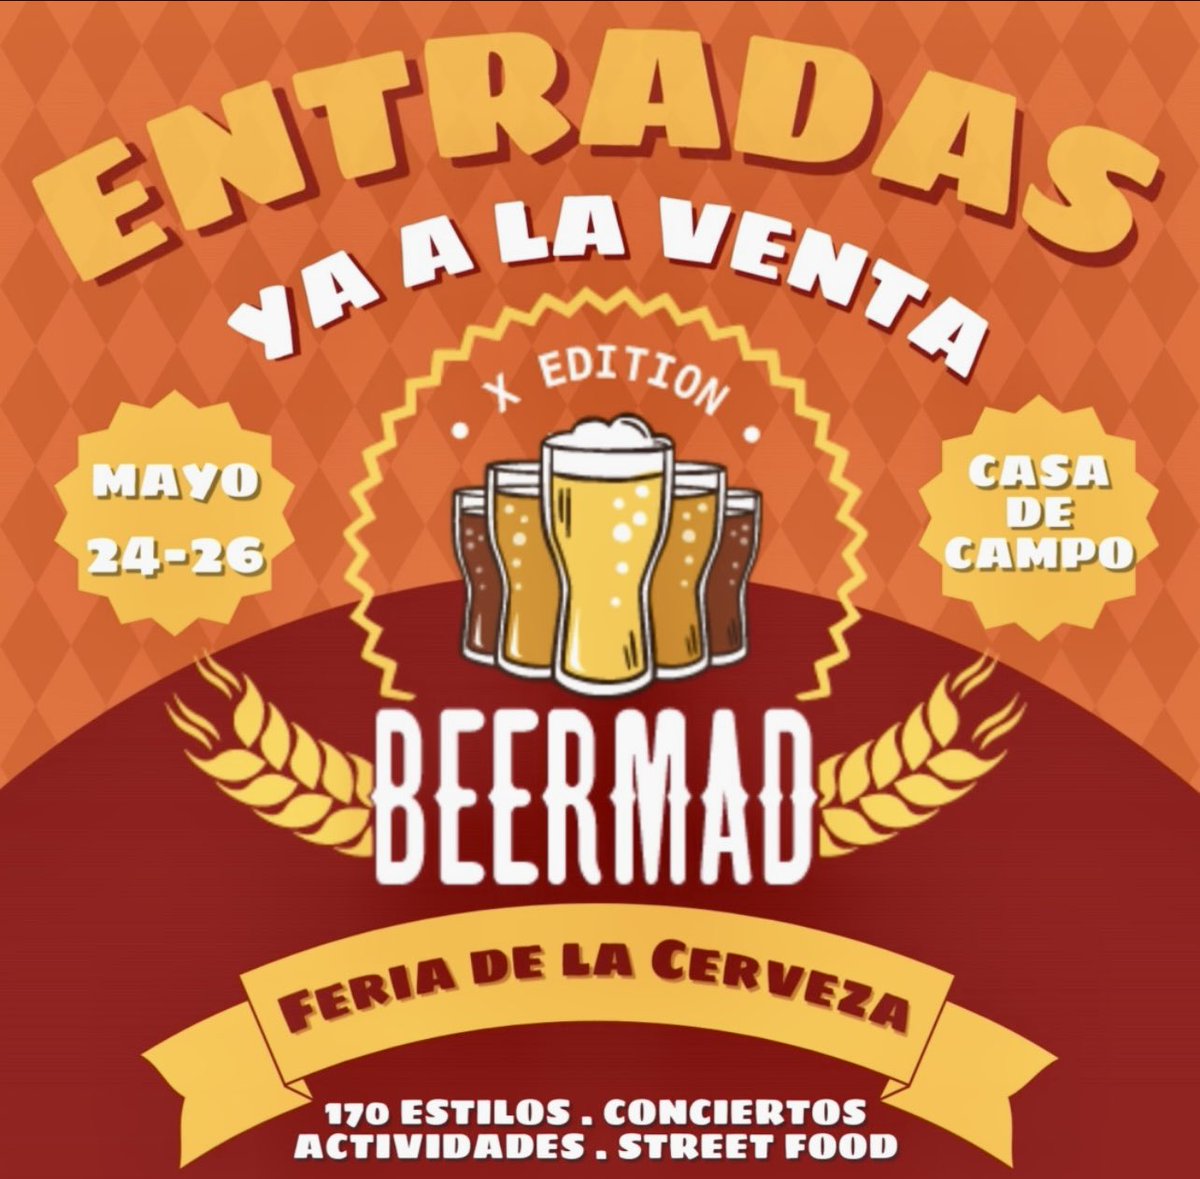 🍺 @leinerhaus Cervecería
alemana de cuarta generación
Estarán en la X de #beermad del 24 al 26 de mayo
#beermad24 #beermad2024 #cervezaartesanal
#birraartesanal #craftbeer #madrid #ociomadrid
#planesmadrid #cervezaalemana